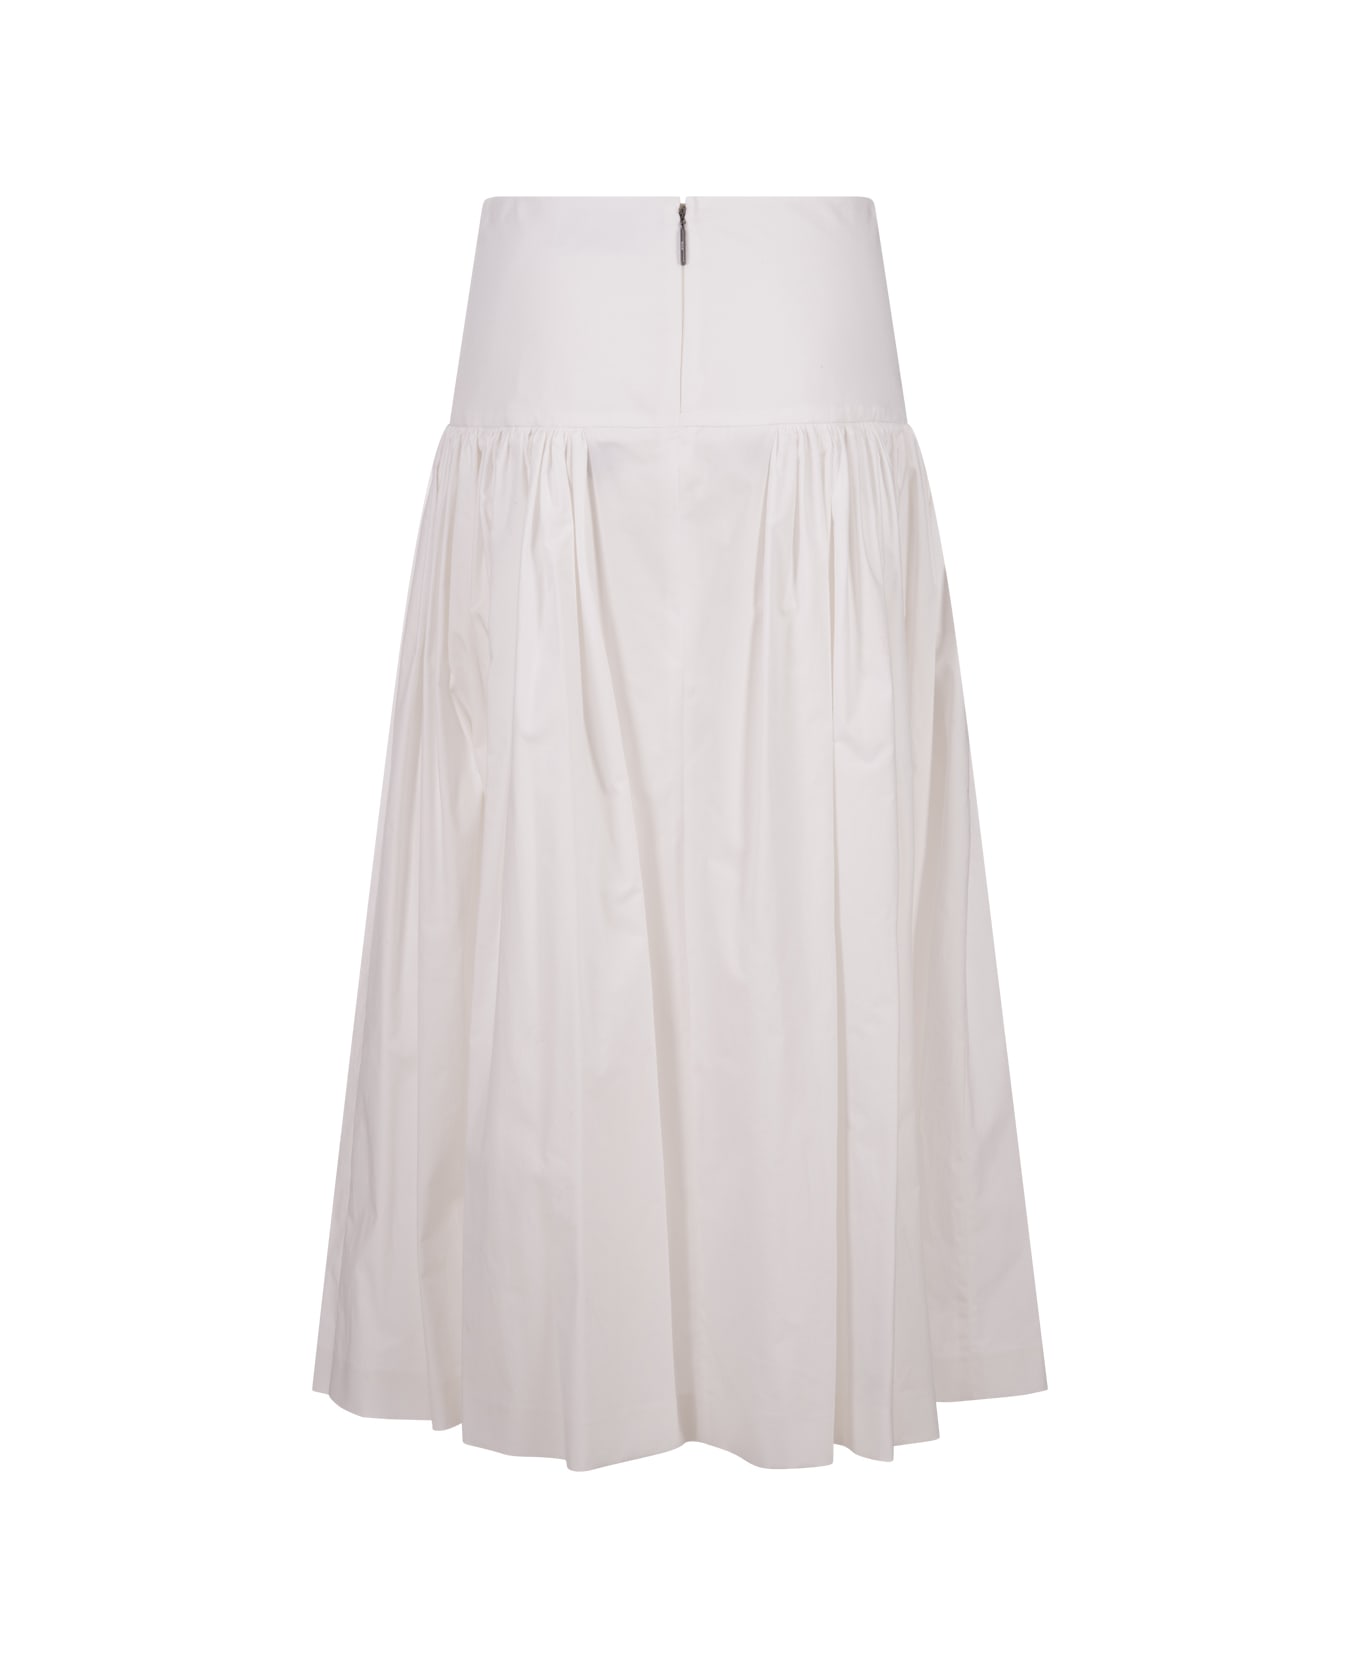 MSGM Flared Midi Skirt In White Poplin - White スカート